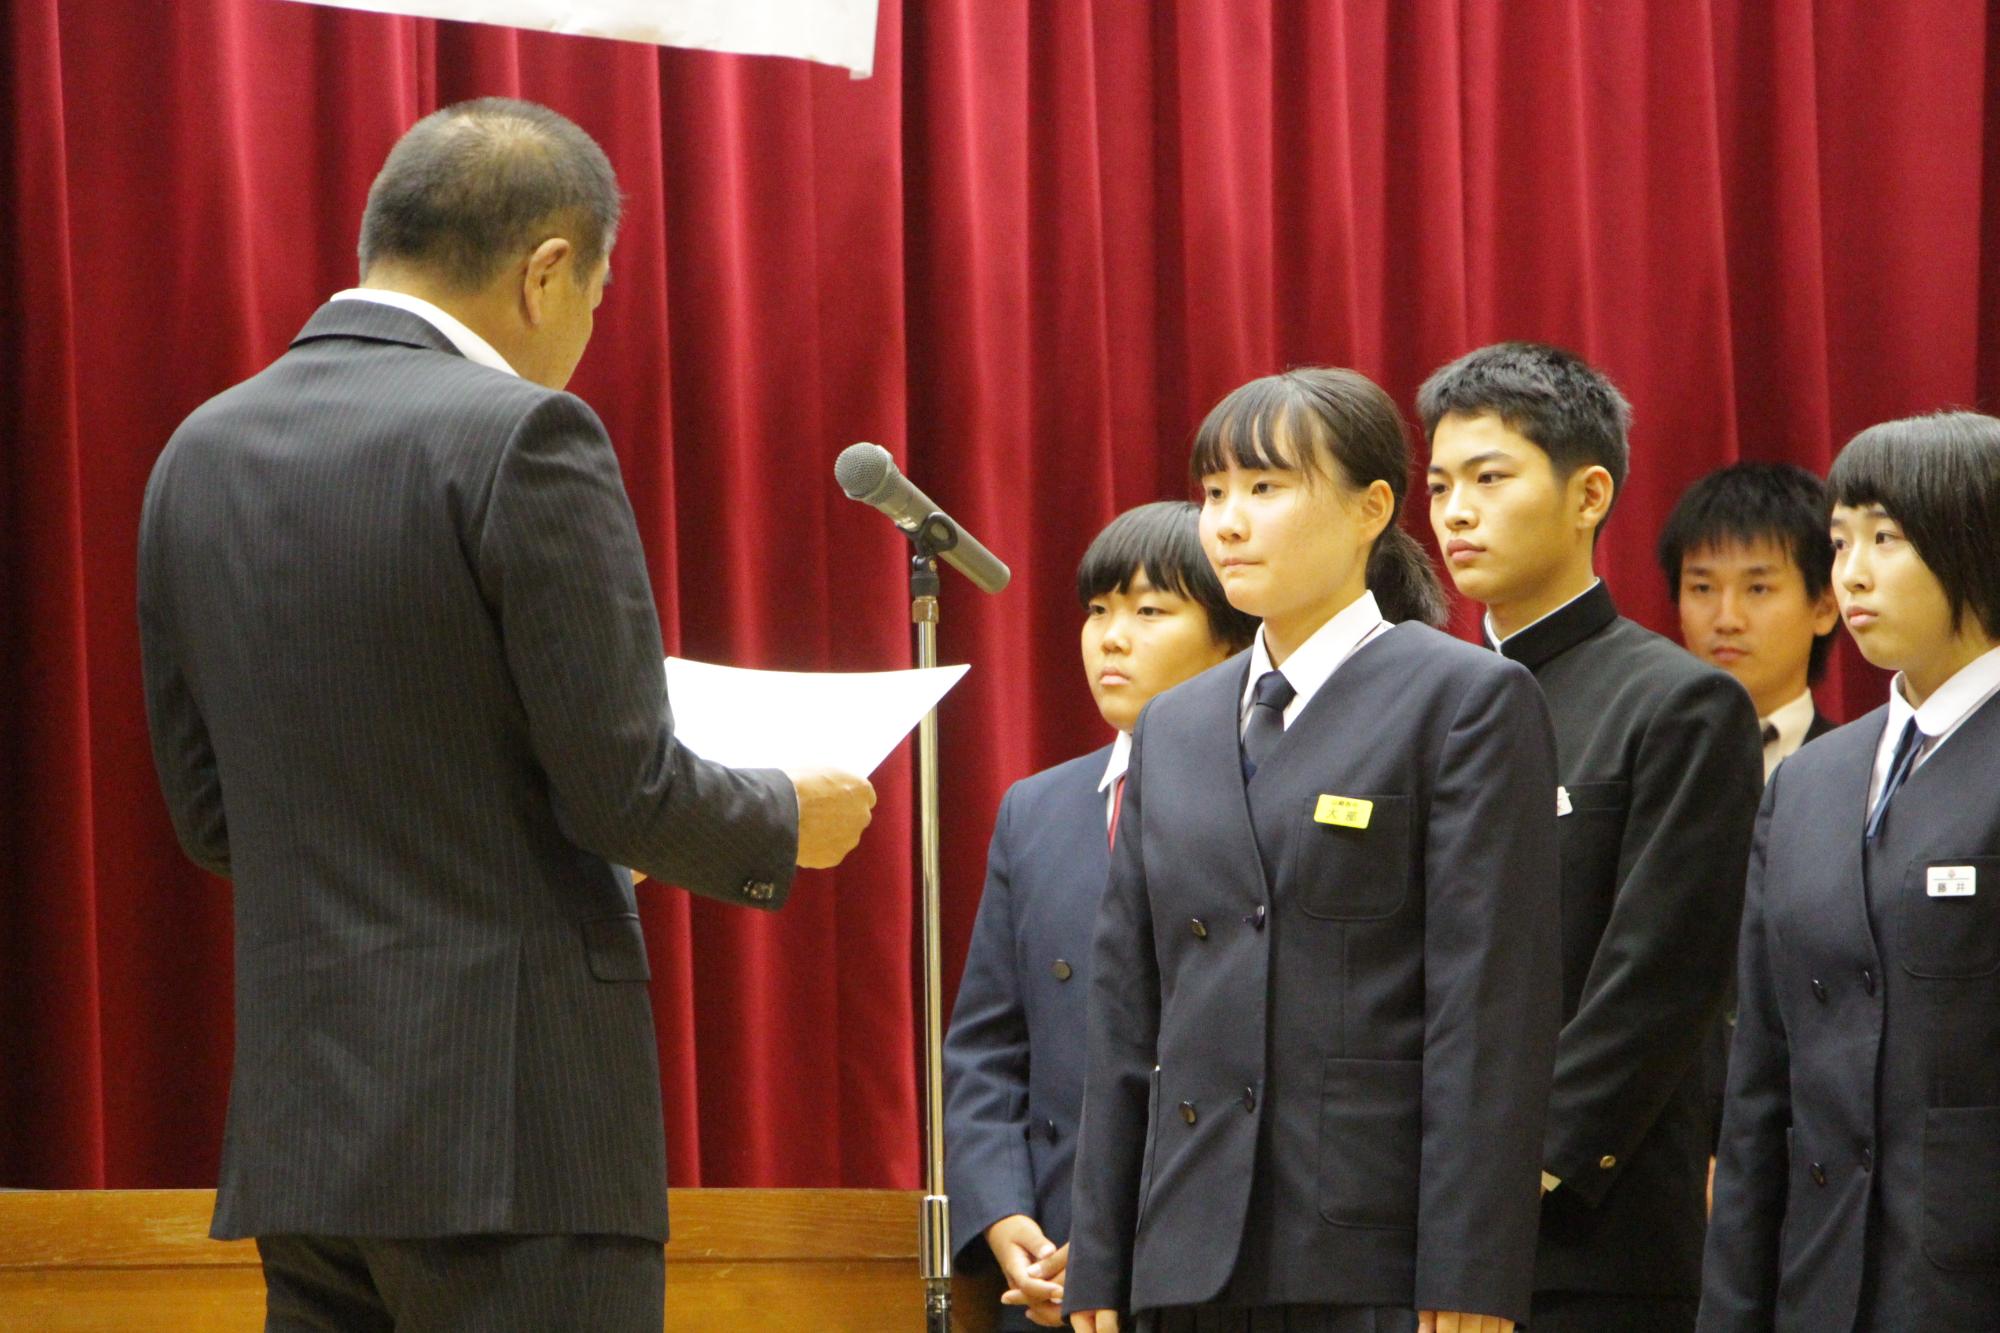 令和元年英語スピーチコンテストで最優秀賞の表彰状を受け取る受賞者の写真